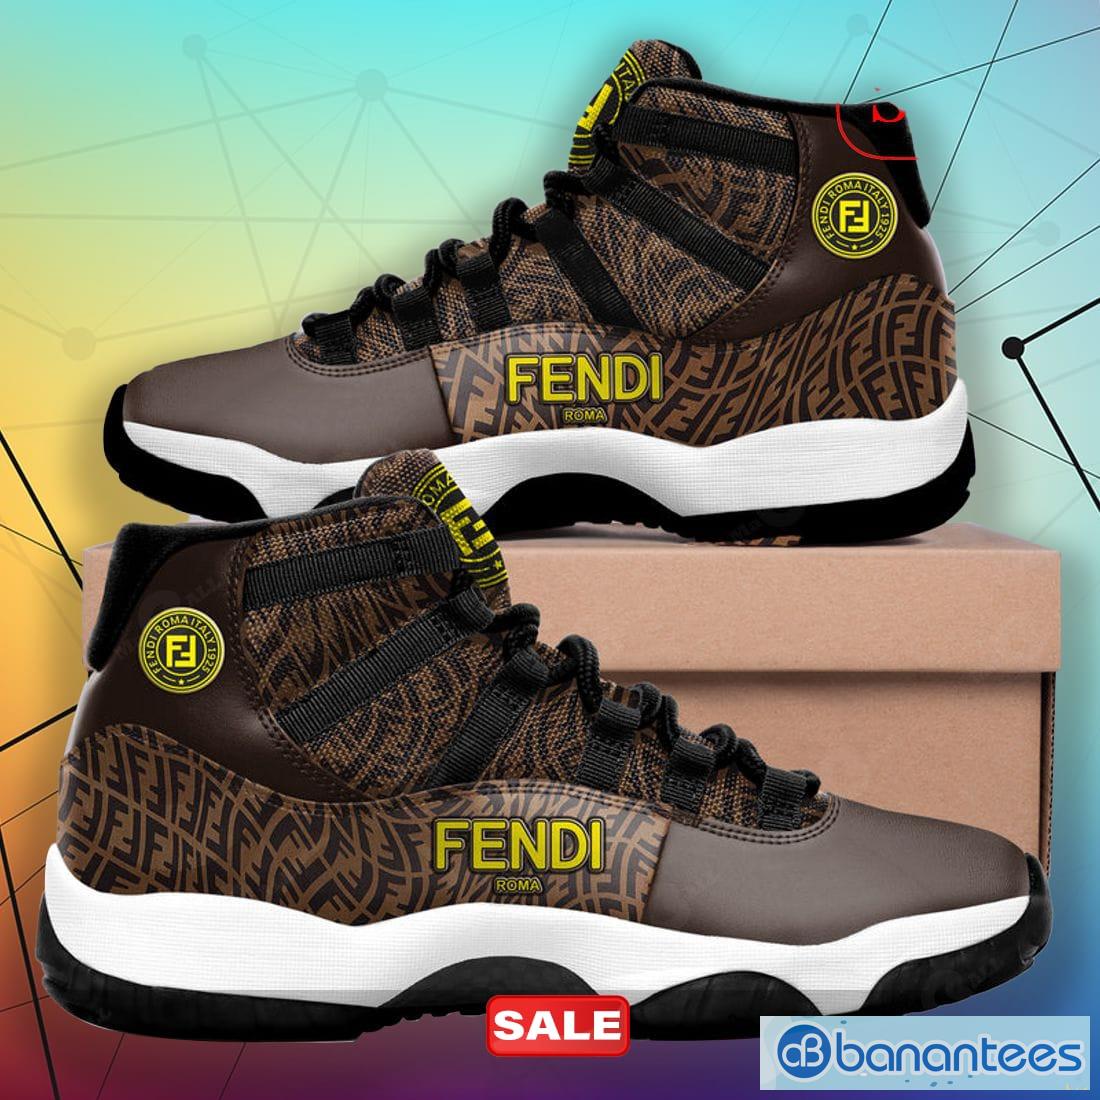 Fendi Air Jordan 11 Sneakers For Men Women Shoes Design - Banantees